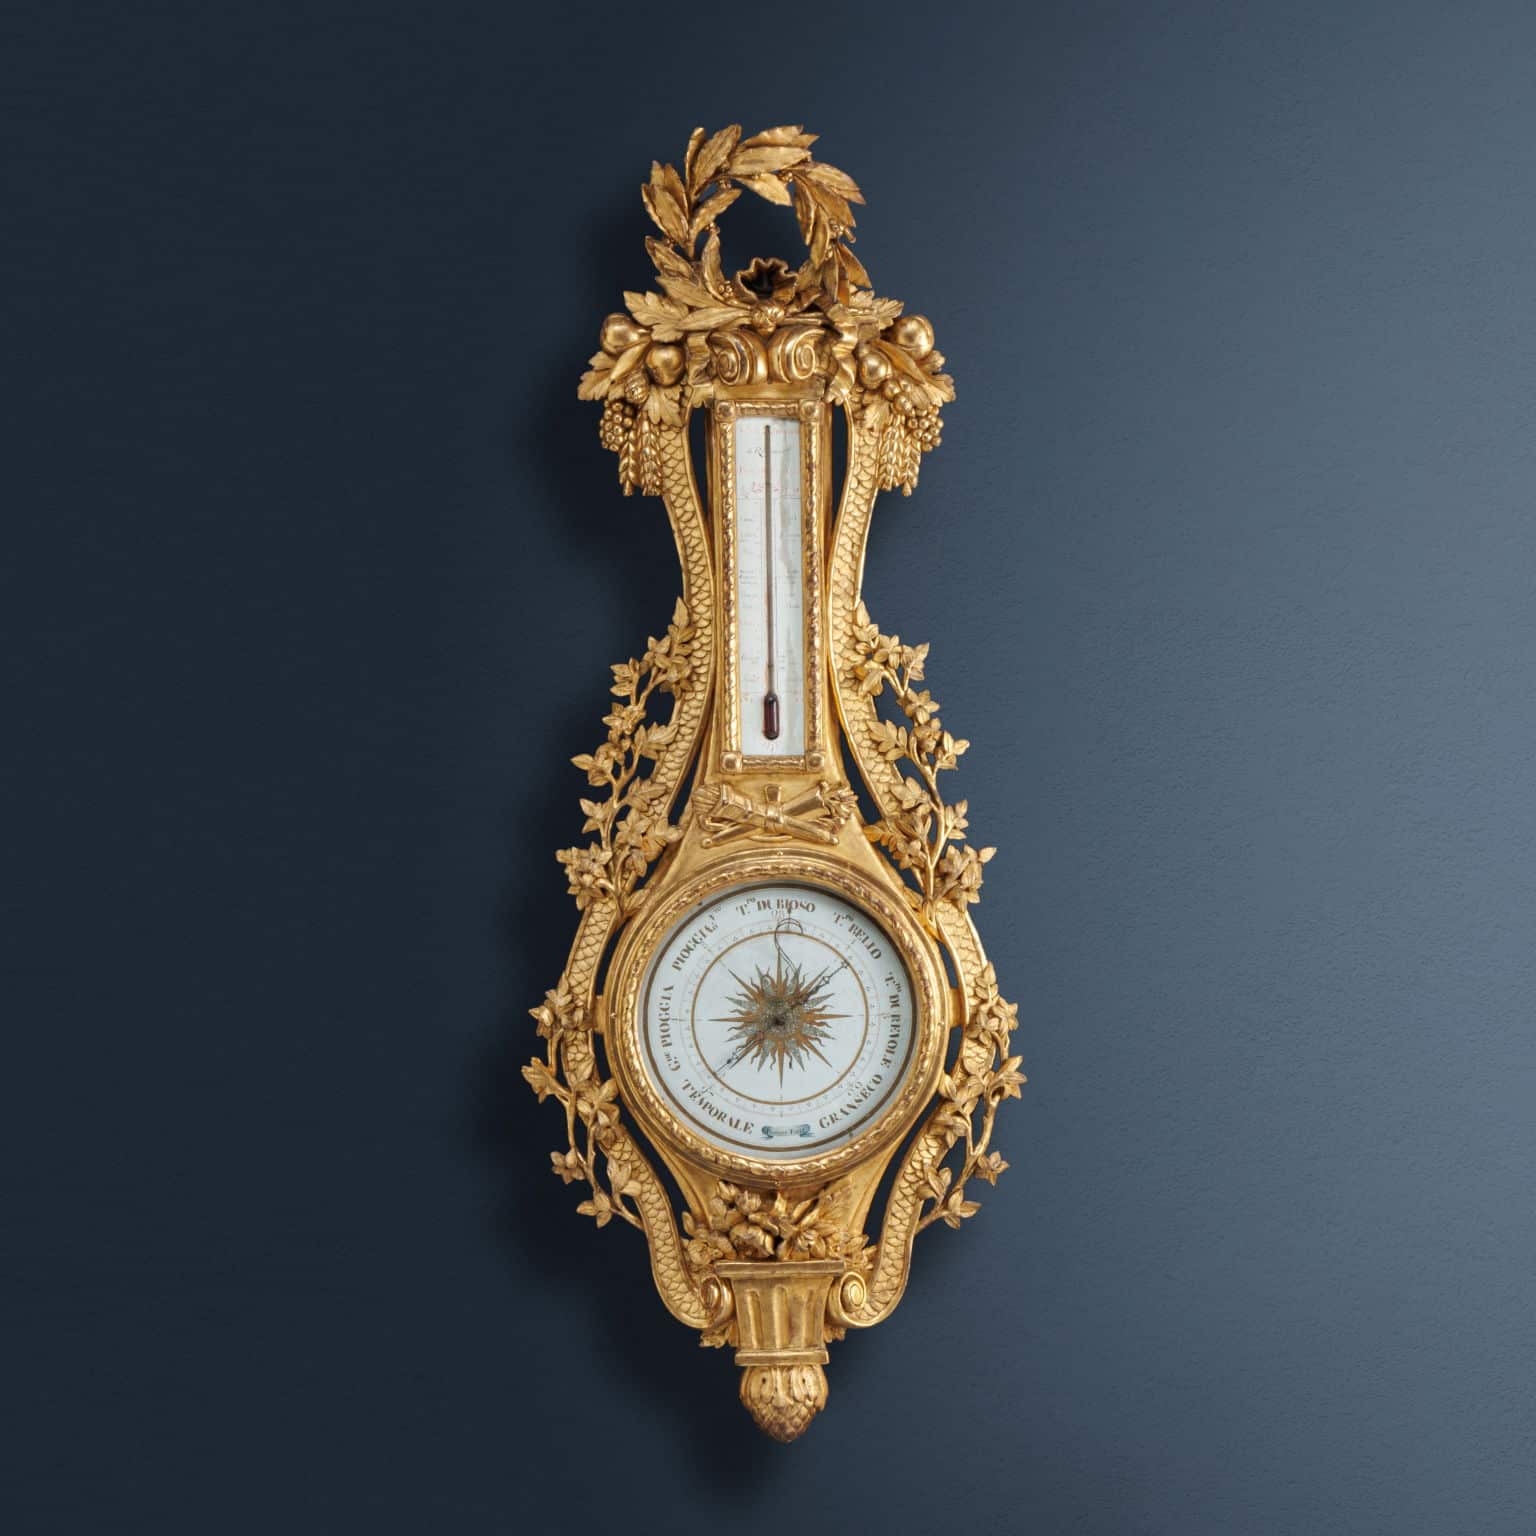 Barometro e termometro in legno intagliato e dorato Fiorone fecit, Milano 1790 ca.